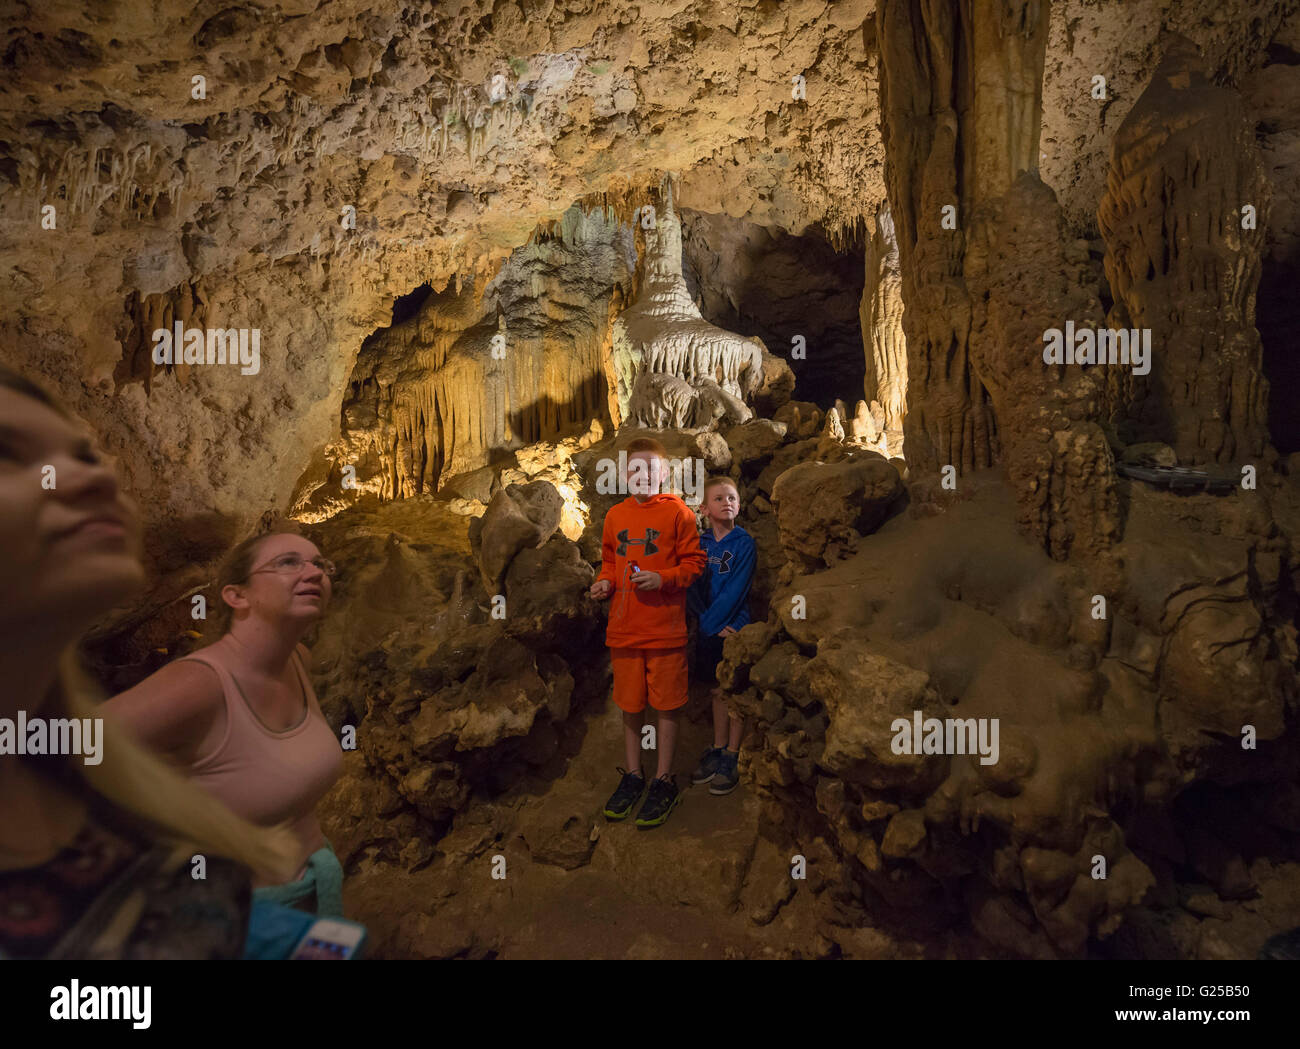 Florida Caverns State Park en Marianna, Florida ofrece excursiones a través de cuevas fantásticas formaciones geológicas de piedra caliza. Foto de stock